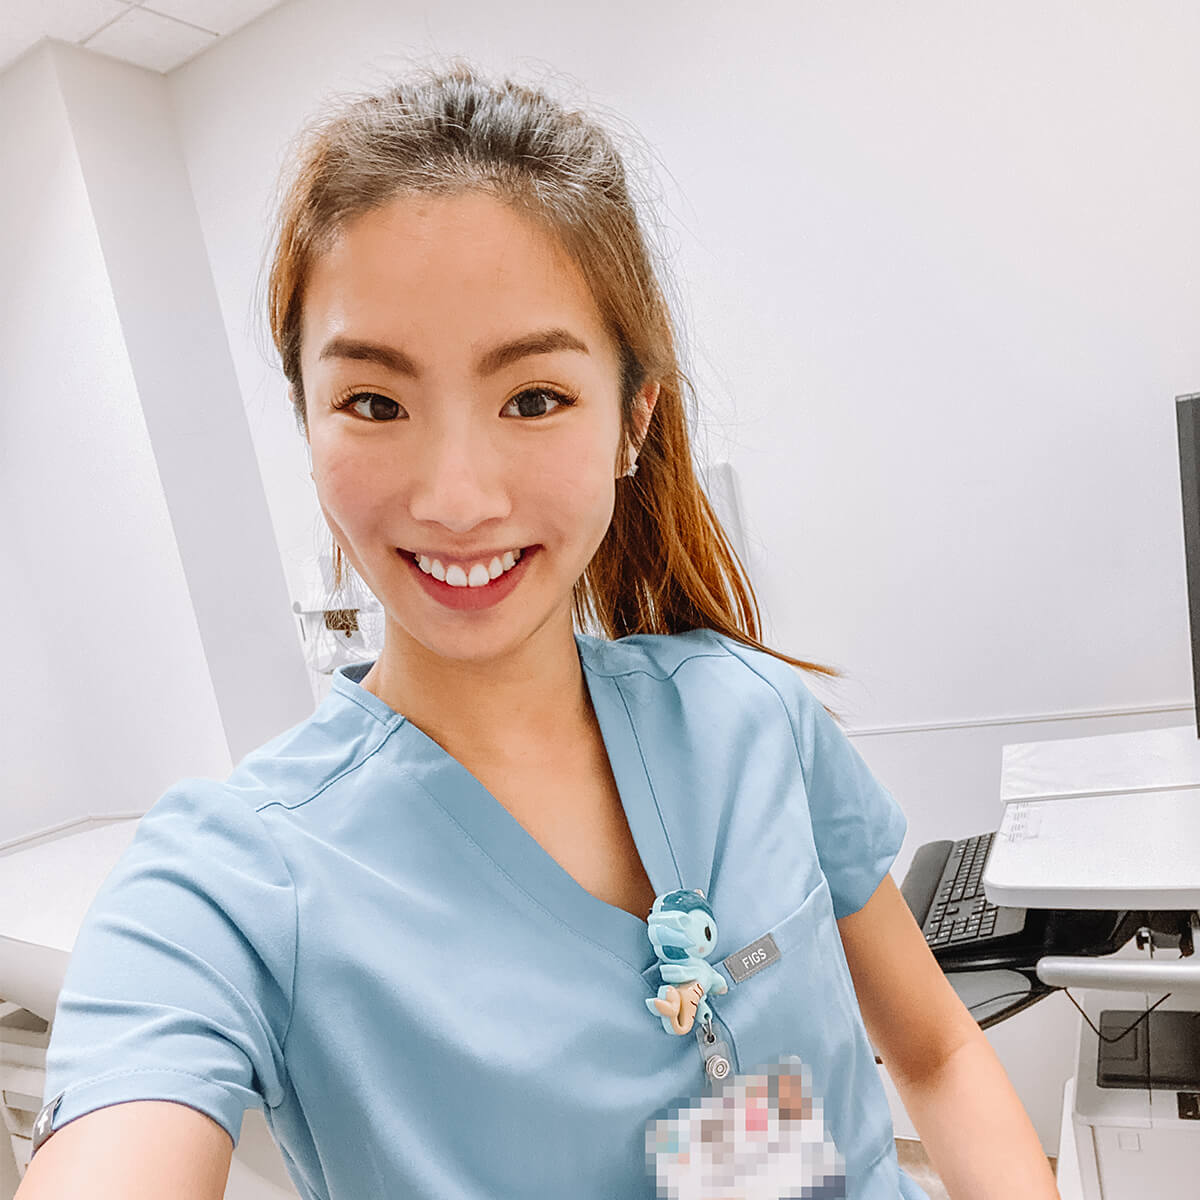 landing your first nursing job